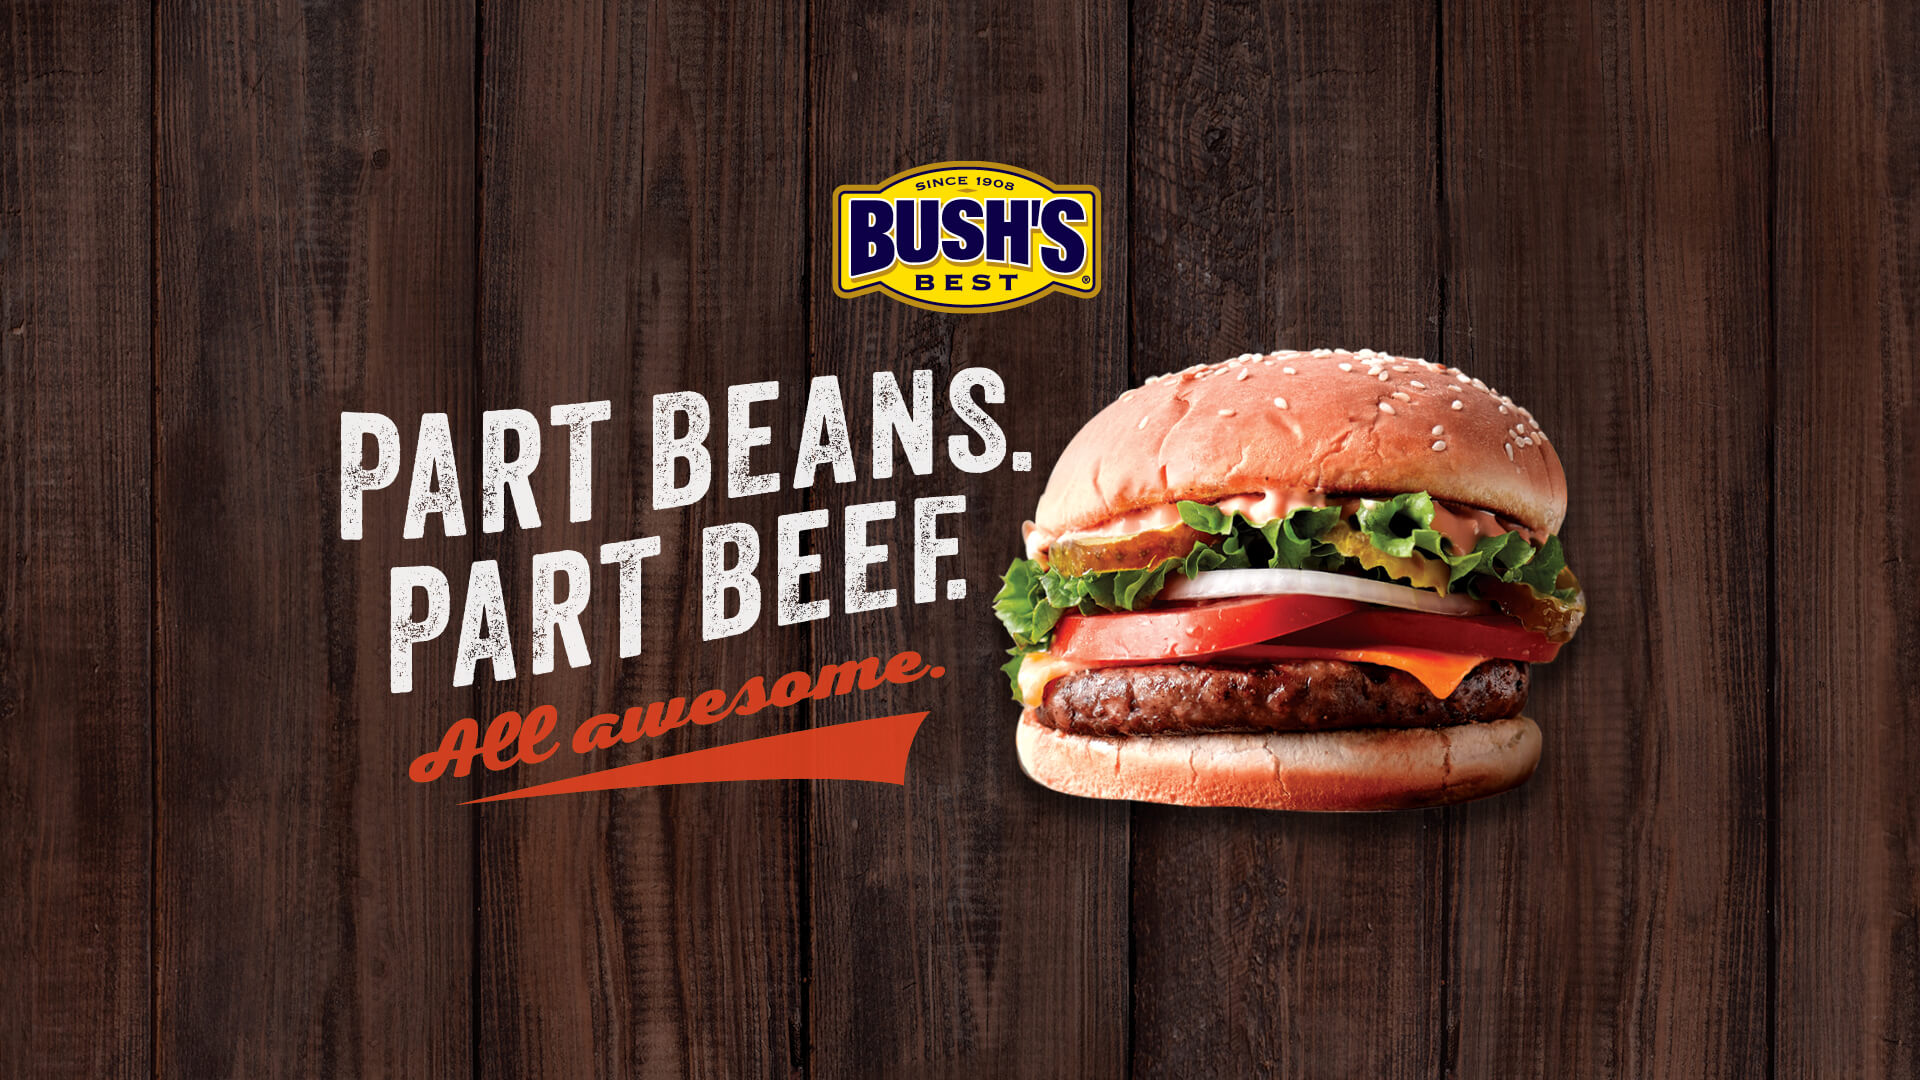 Part Beans. Part Beef. Bush’s Best Blended Burger Feature